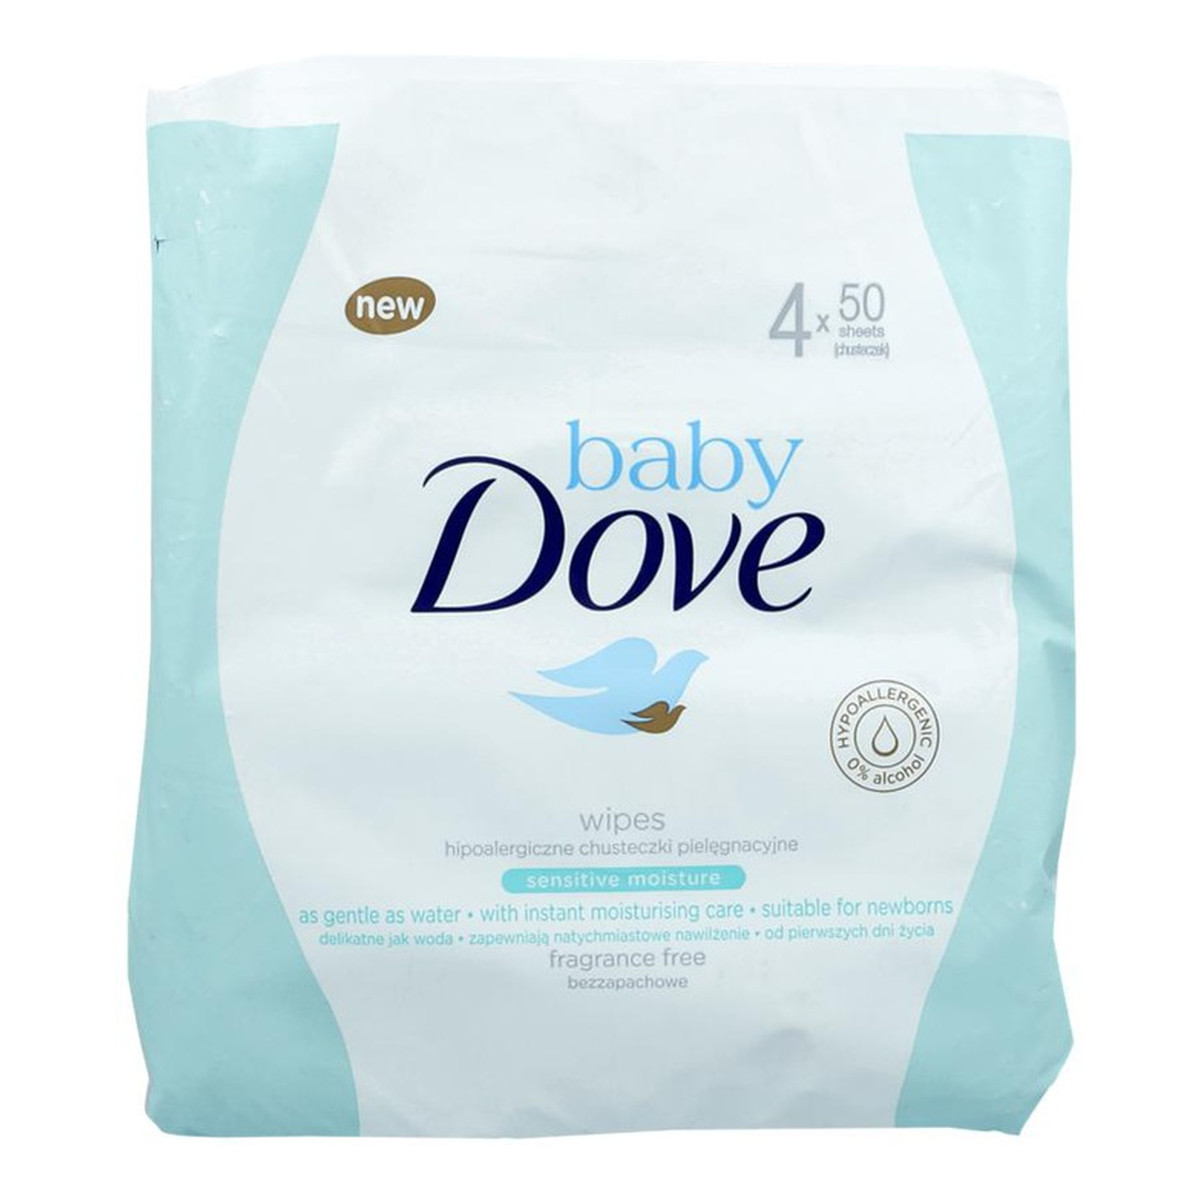 Dove Baby nawilżane chusteczki oczyszczające 4x50szt